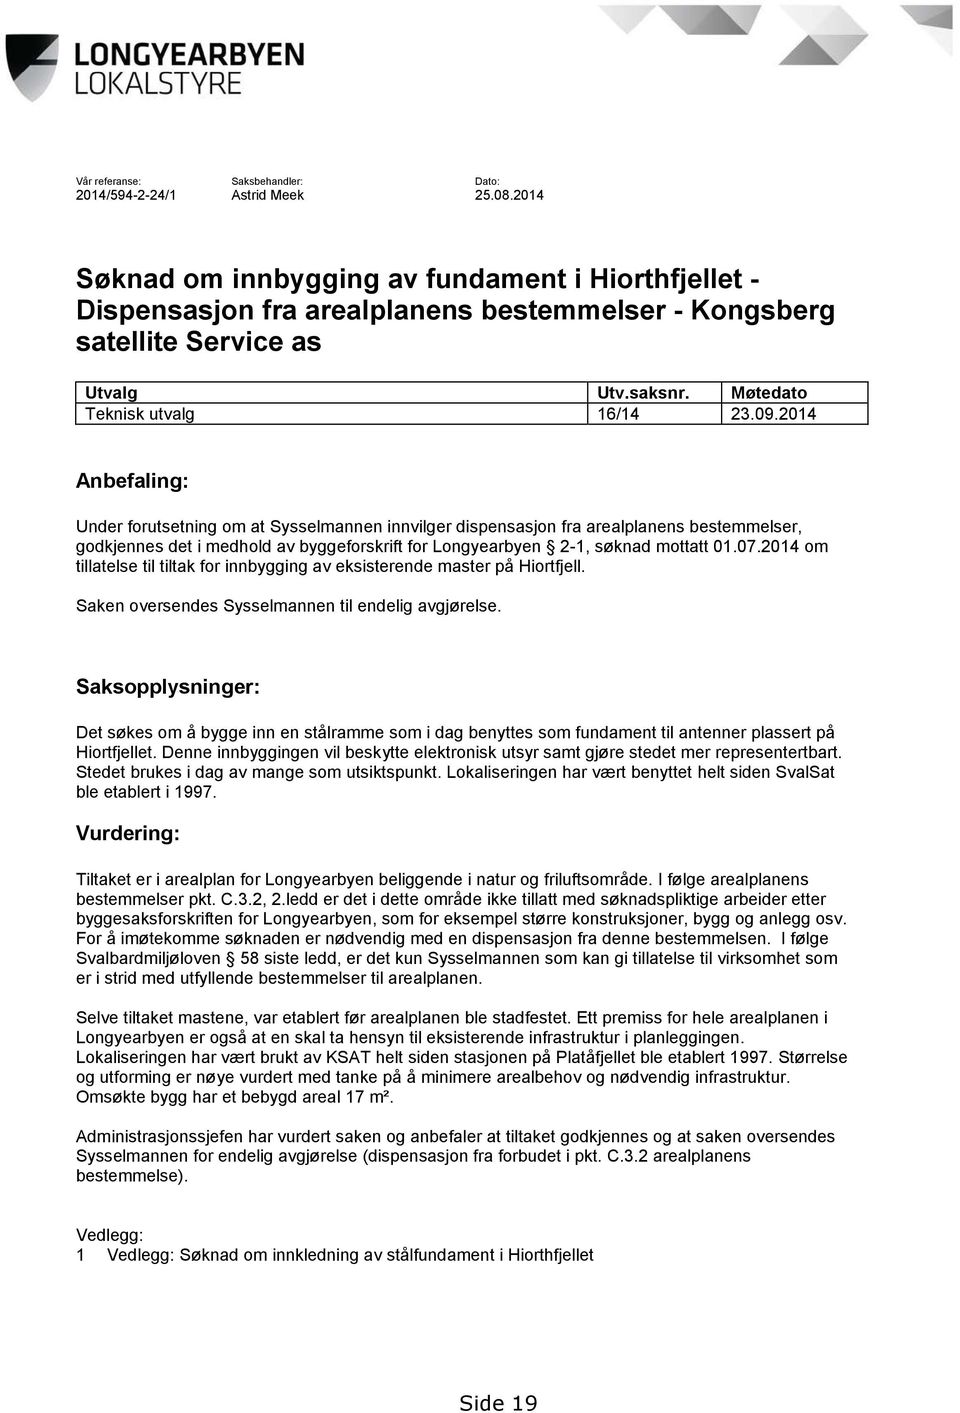 2014 Anbefaling: Under forutsetning om at Sysselmannen innvilger dispensasjon fra arealplanens bestemmelser, godkjennes det i medhold av byggeforskrift for Longyearbyen 2-1, søknad mottatt 01.07.